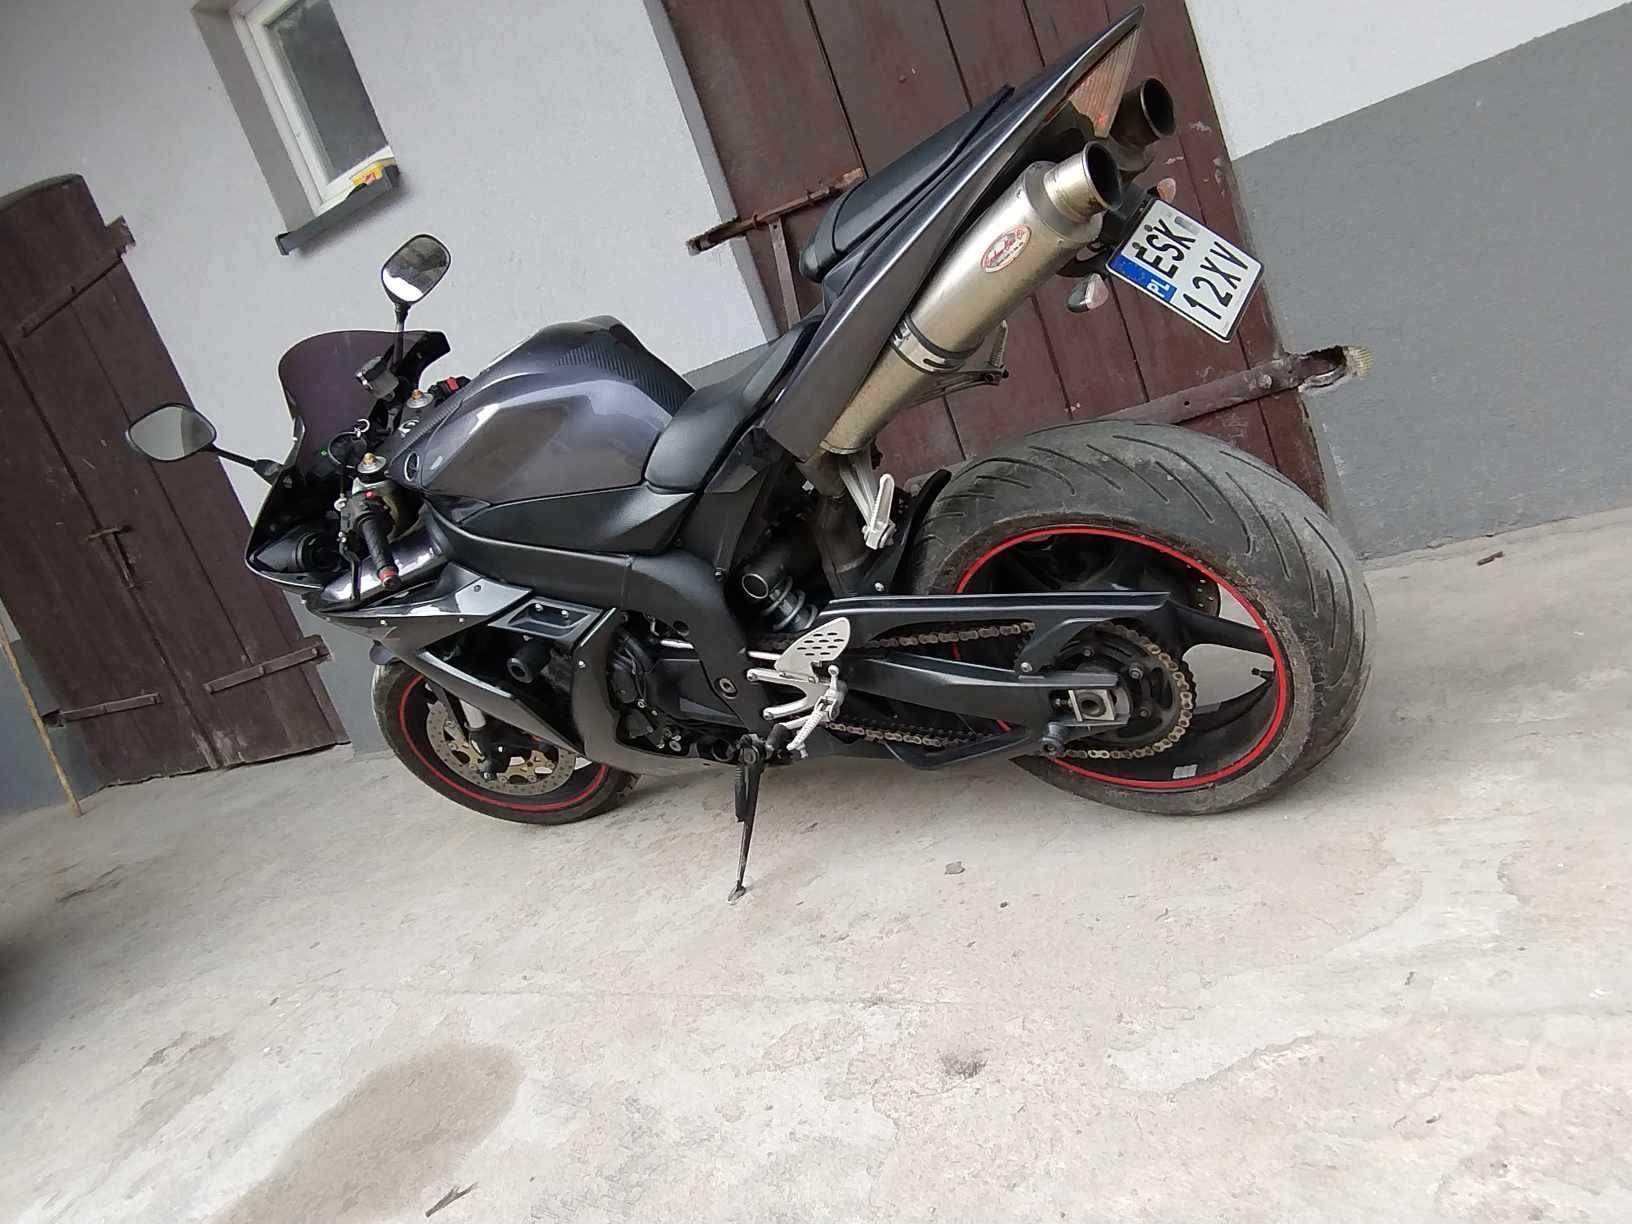 Motocykl Yamaha r1